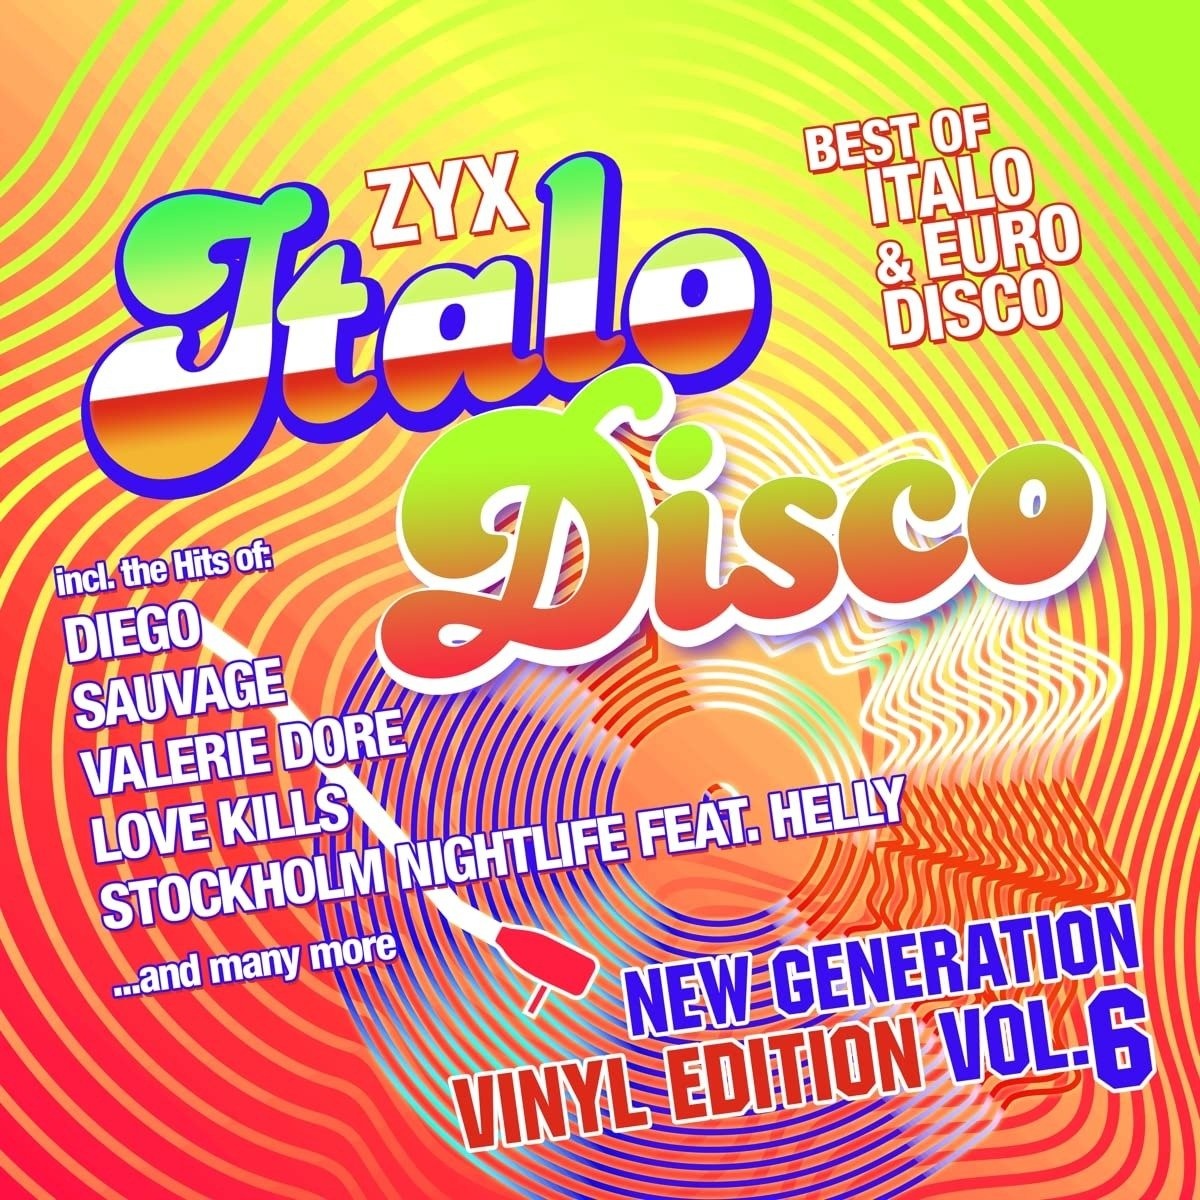 Итало диско. Italo Disco New Generation vol5 обложки. Electric City Cowboys ZYX Italo Disco New Generation Vol. 22. Cliff Wedge feat. Vasso - Angel Eyes. Italo disco new generation vol 24